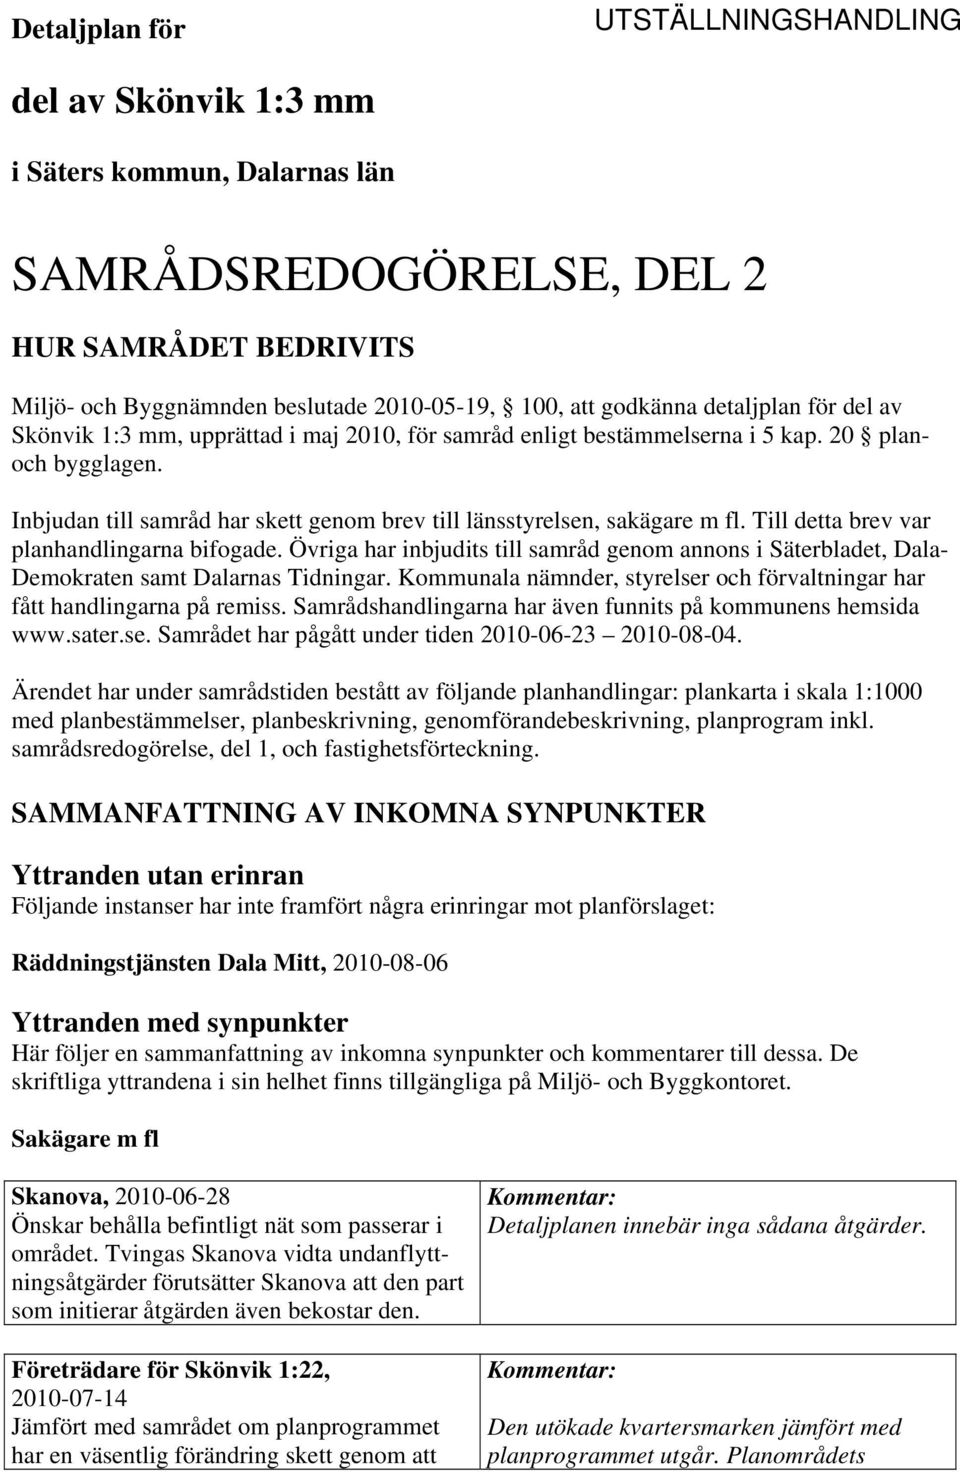 Till detta brev var planhandlingarna bifogade. Övriga har inbjudits till samråd genom annons i Säterbladet, Dala- Demokraten samt Dalarnas Tidningar.